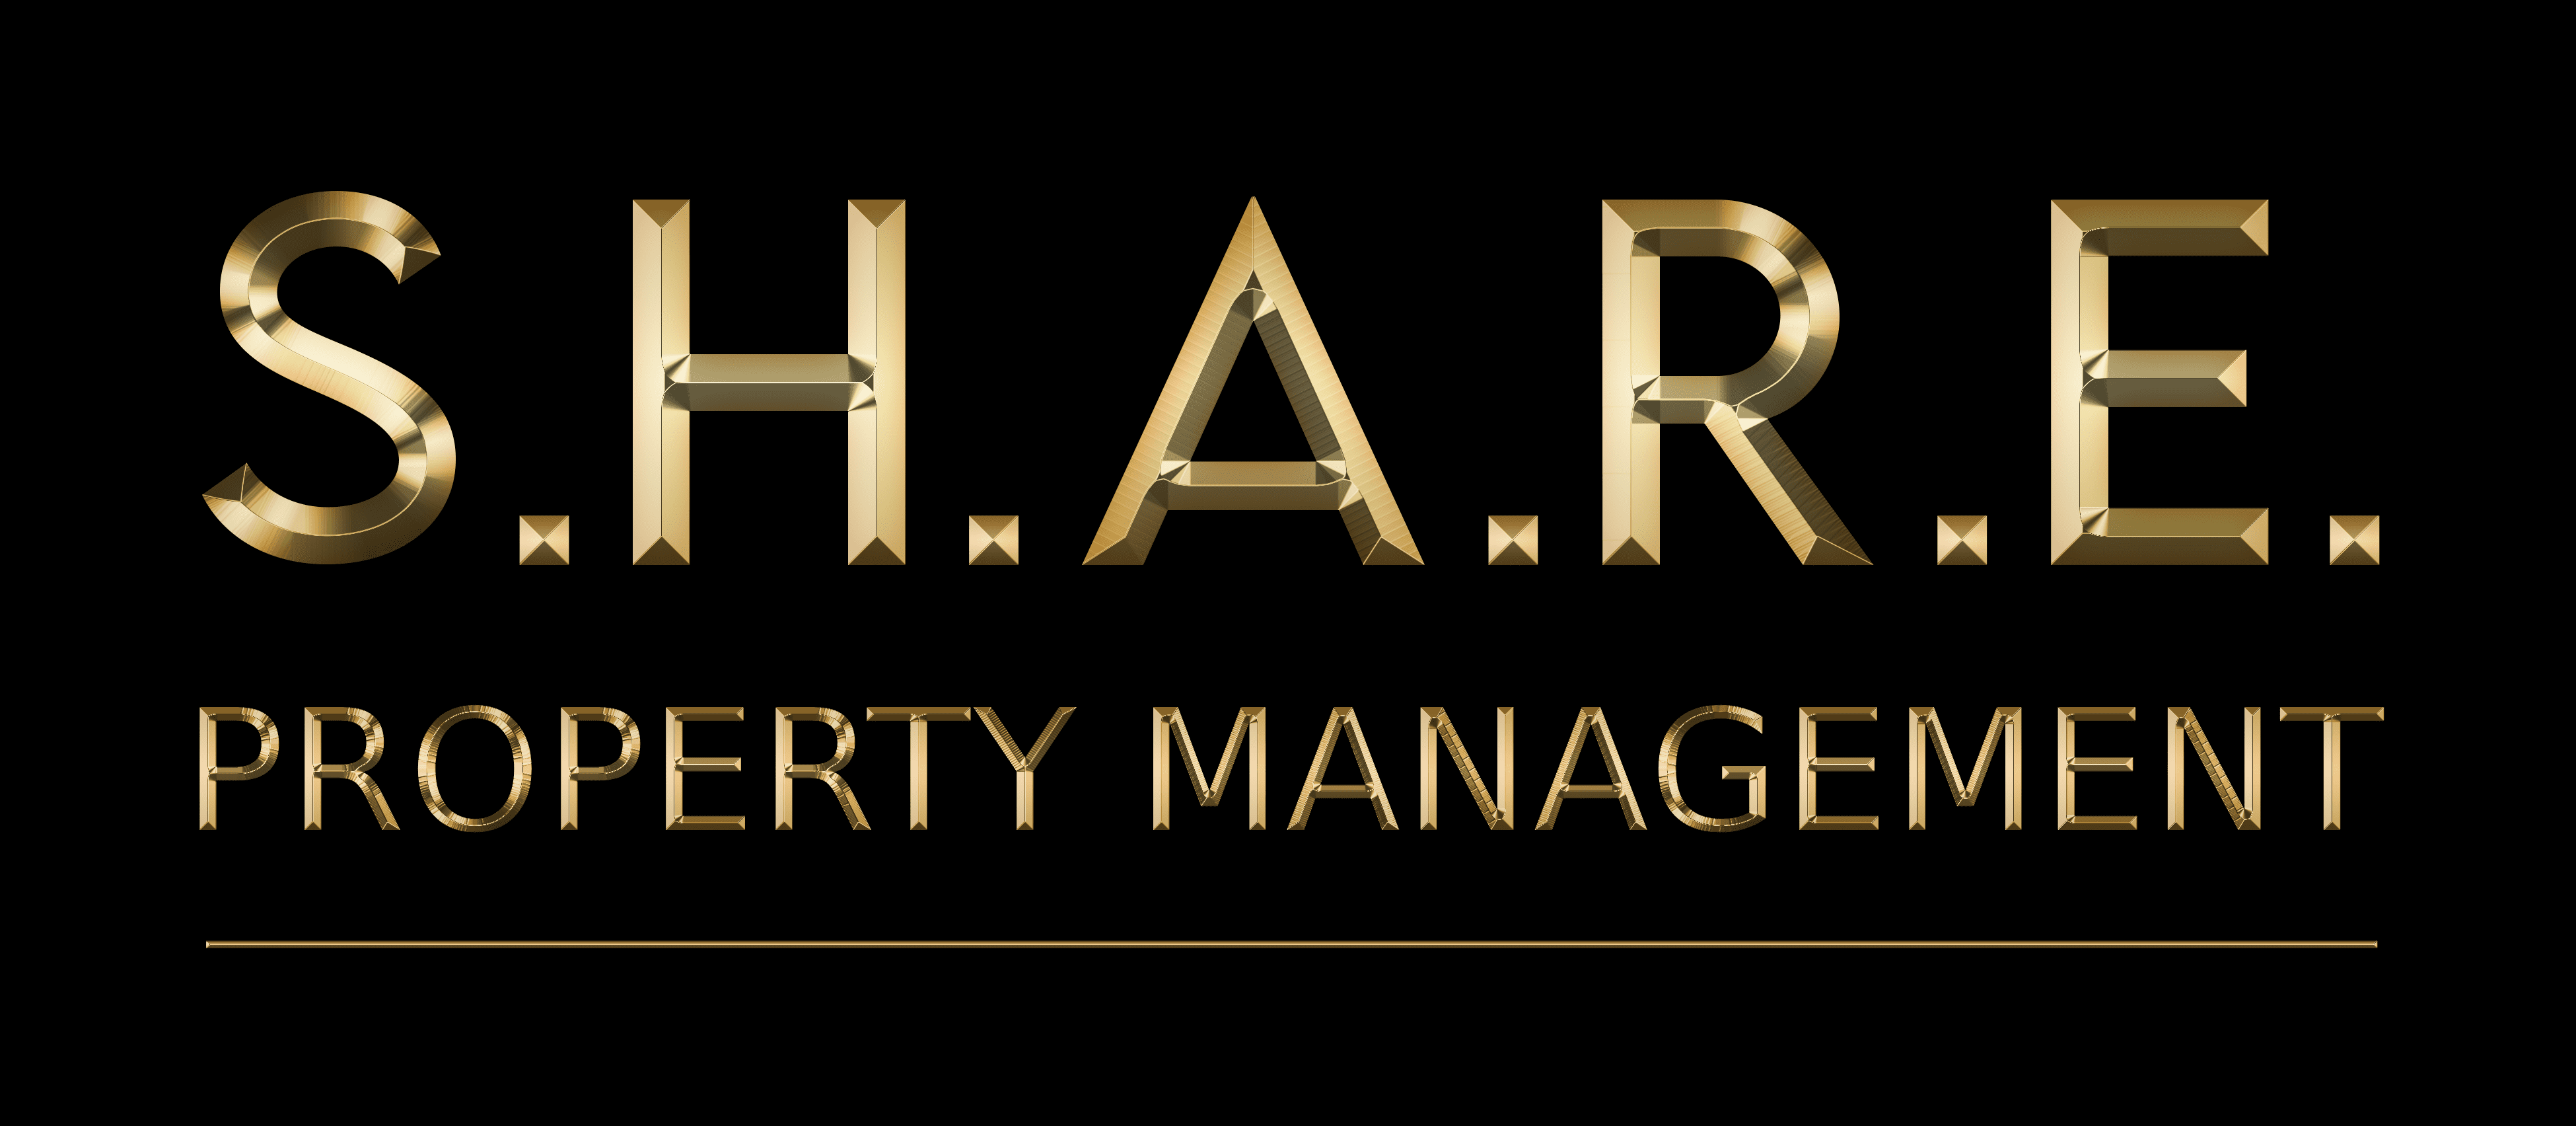 S.H.A.R.E. PROPERTY MANAGEMENT